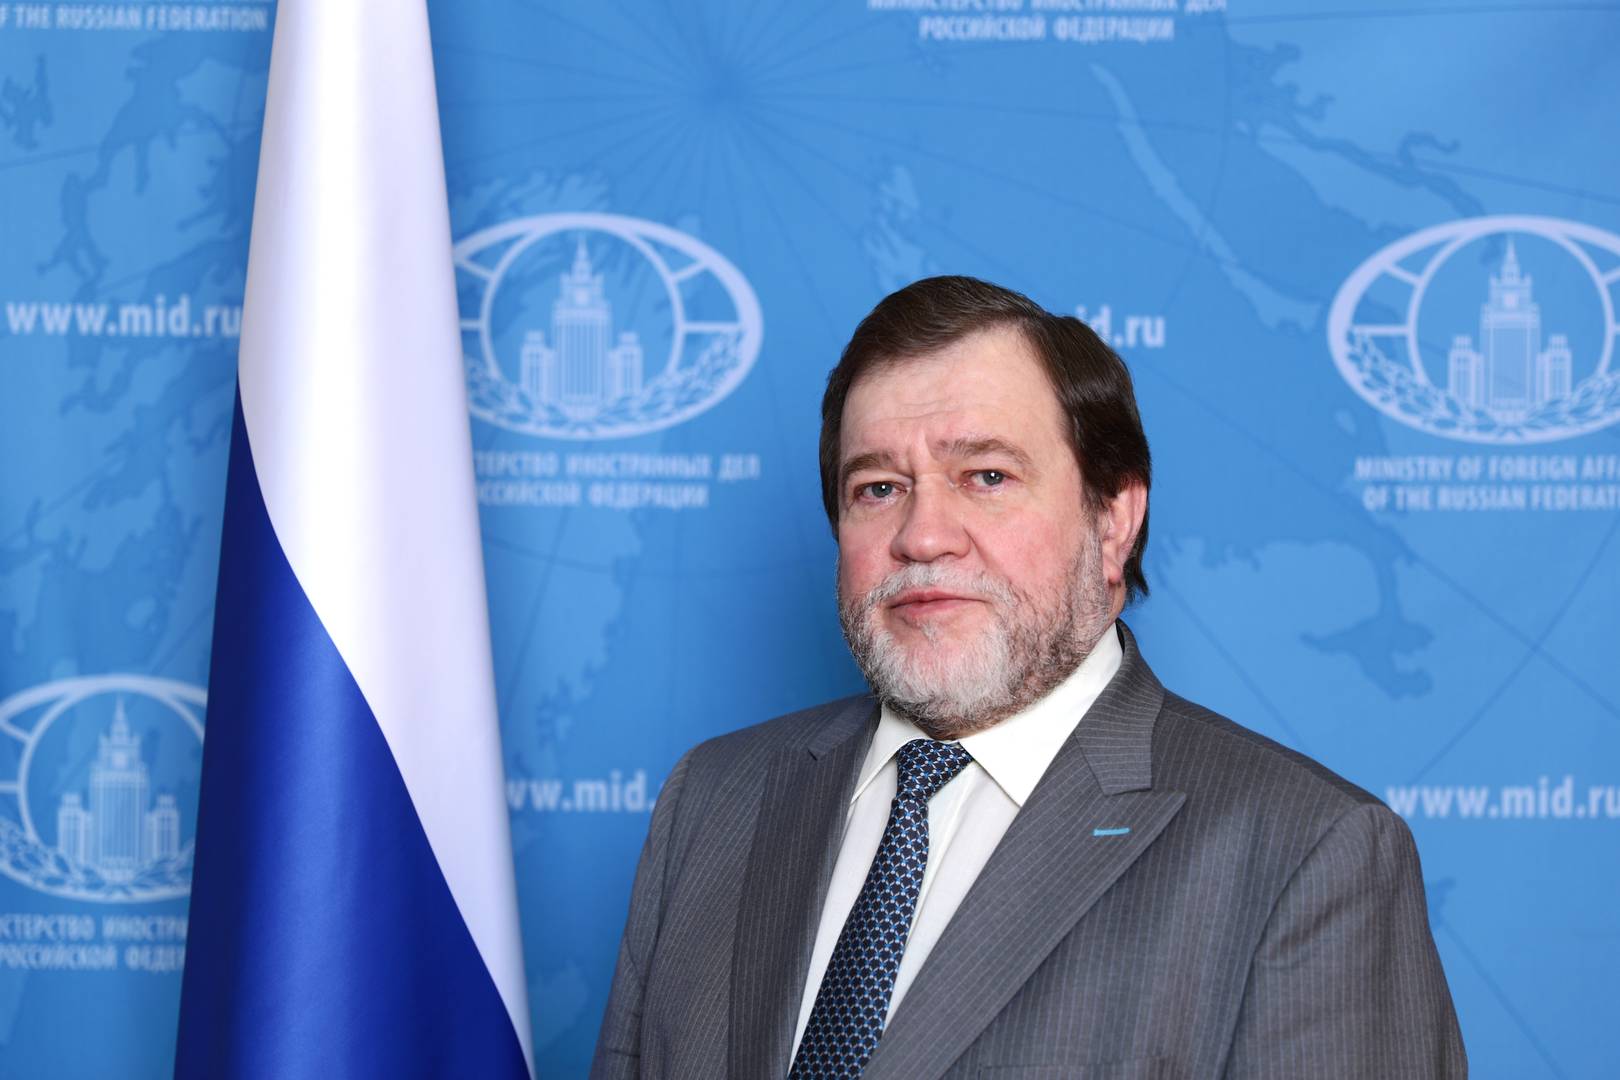 Чрезвычайный и Полномочный Посол Российской Федерации в Узбекистане Мальгинов Олег Сергеевич